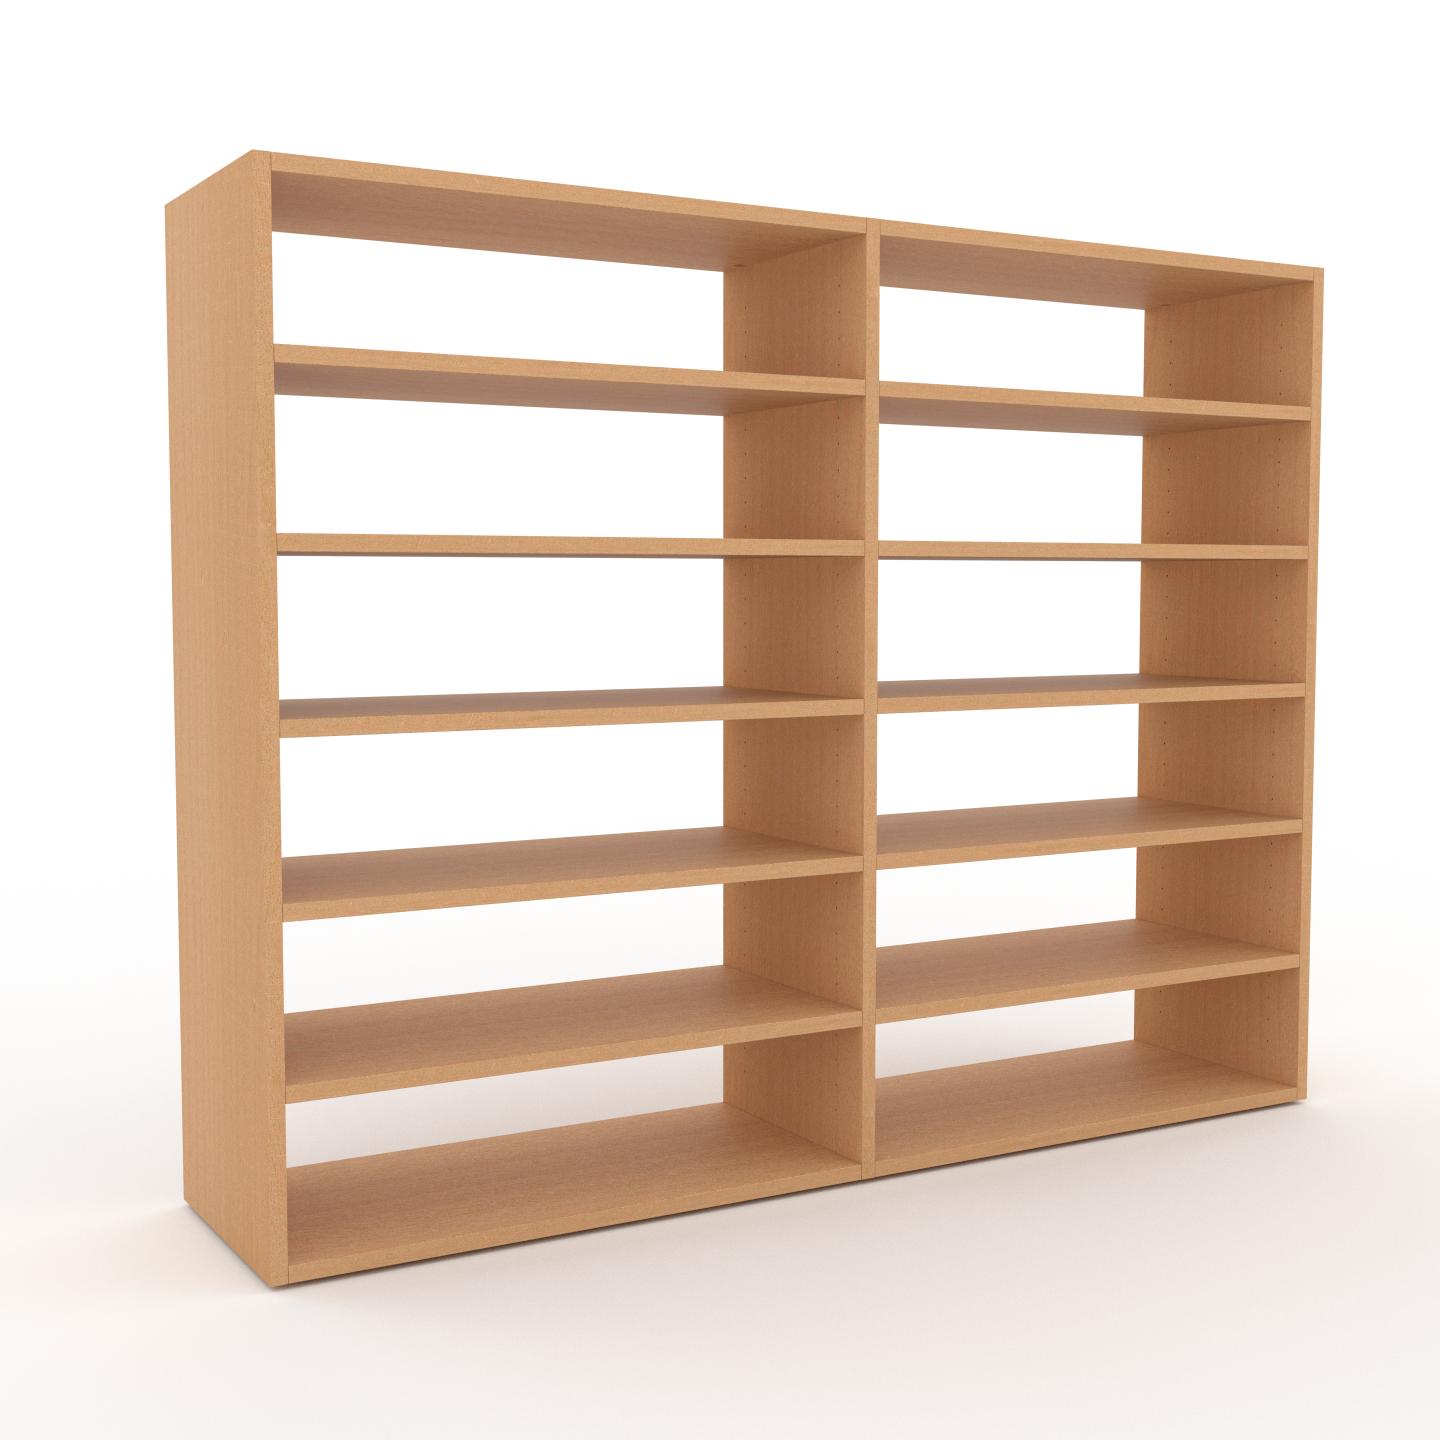 MYCS Bücherregal Buche, Holz - Modernes Regal für Bücher: Hochwertige Qualität, einzigartiges Design - 152 x 118 x 35 cm, konfigurierbar